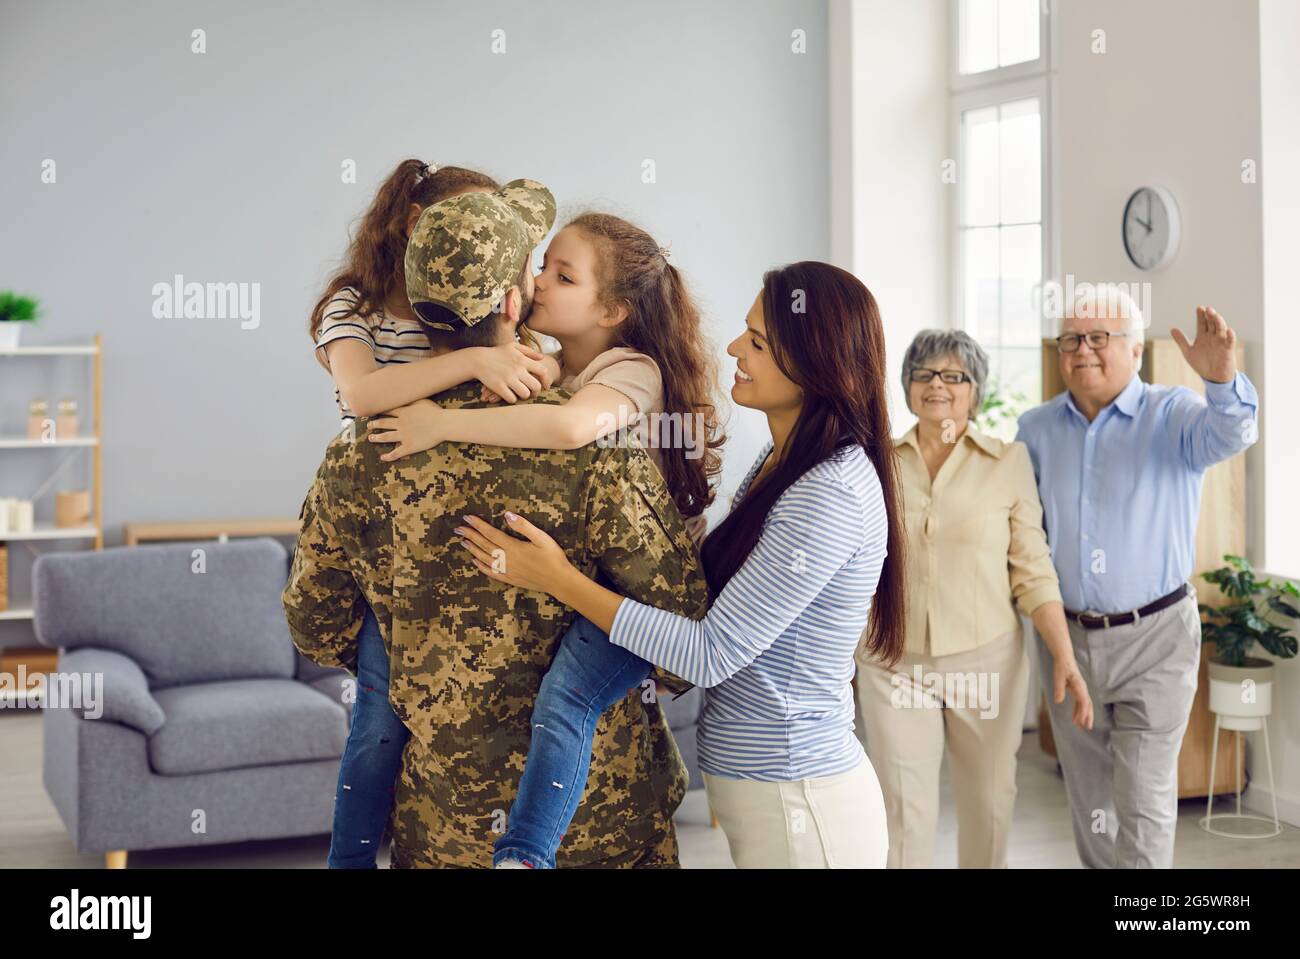 Emotionales Porträt eines unkenntlichen Mannes in Militäruniform, der seine große Familie umarmt. Stockfoto